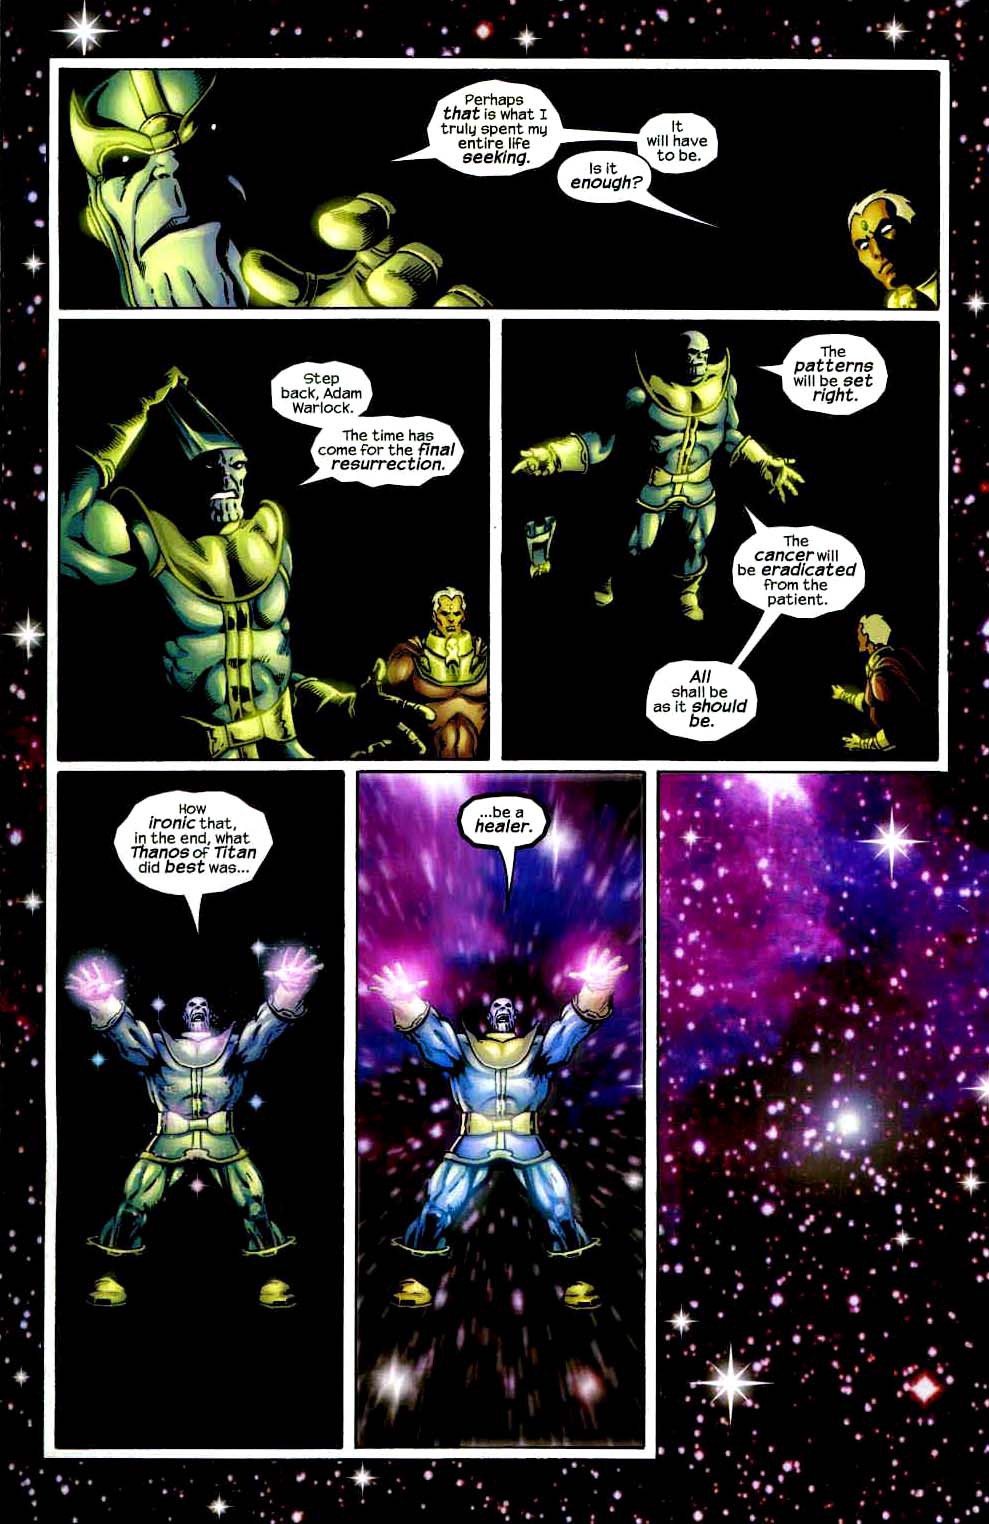 Heart of the Universe, bảo vật vũ trụ giúp Thanos trở thành Chúa Trời, sở hữu quyền năng vượt xa Găng Tay Vô Cực - Ảnh 15.